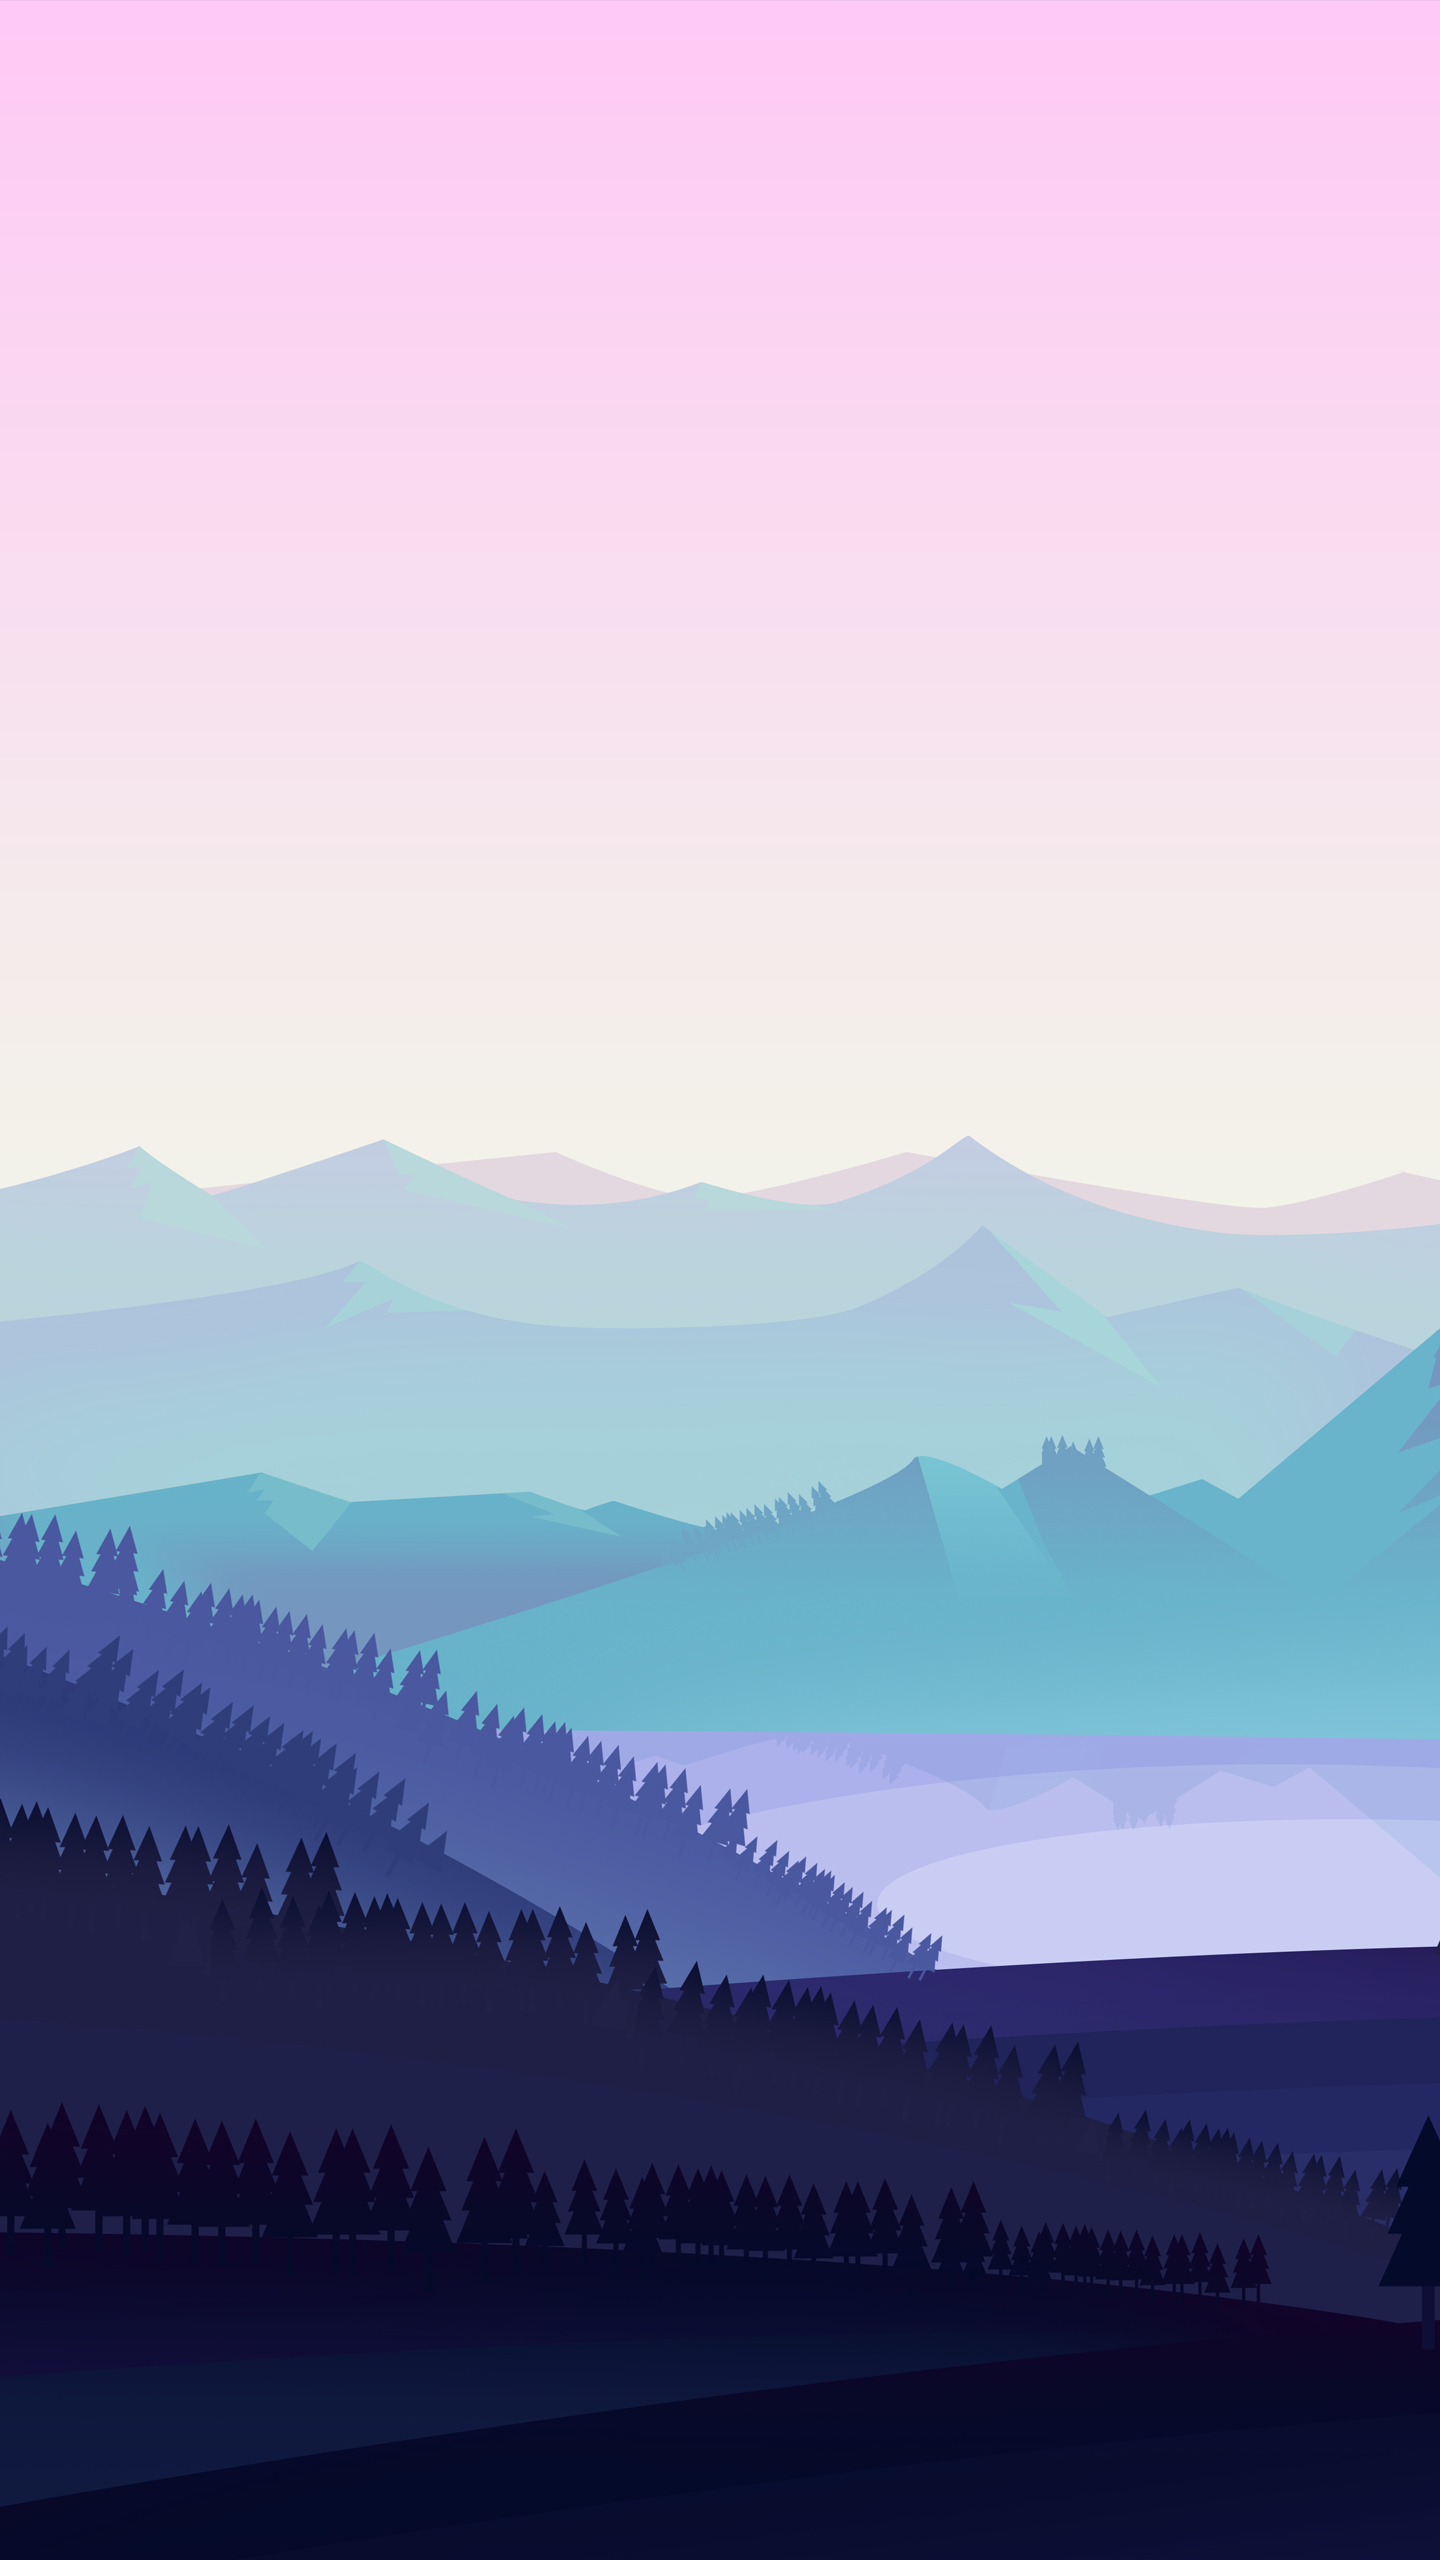 anime landscape wallpaper,sky,atmospheric phenomenon,mountainous landforms,purple,mountain